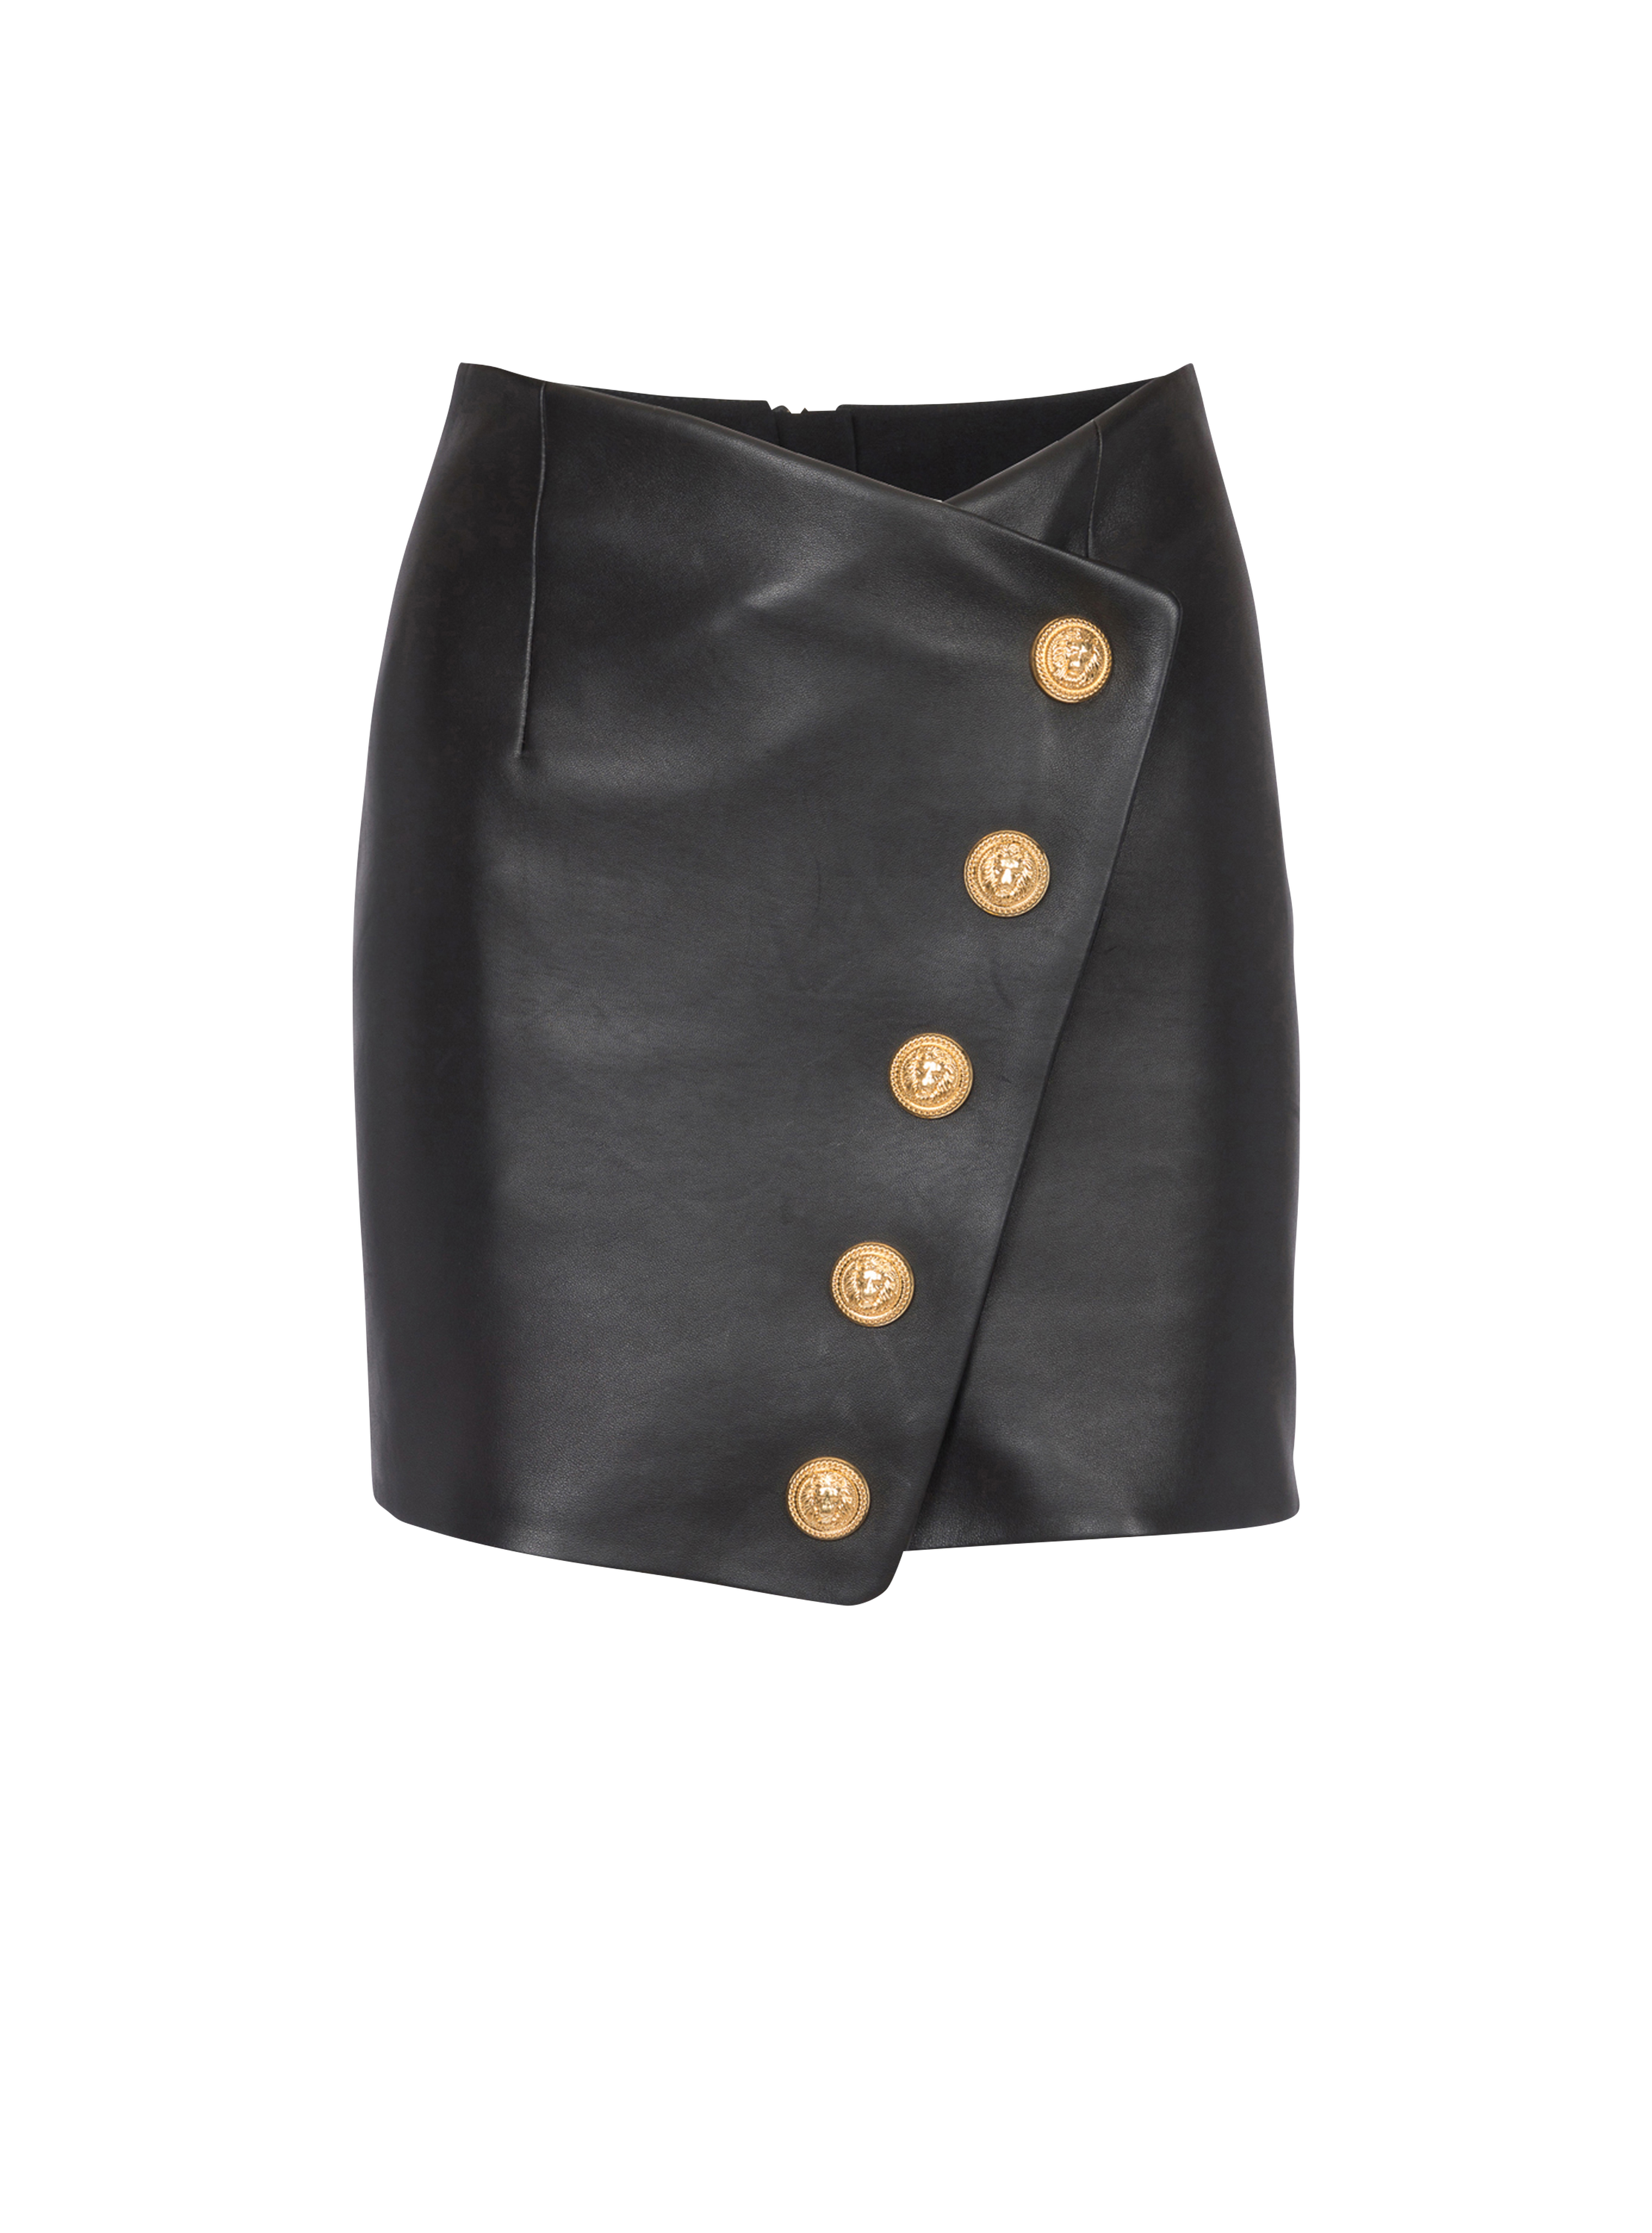 Short leather skirt, black